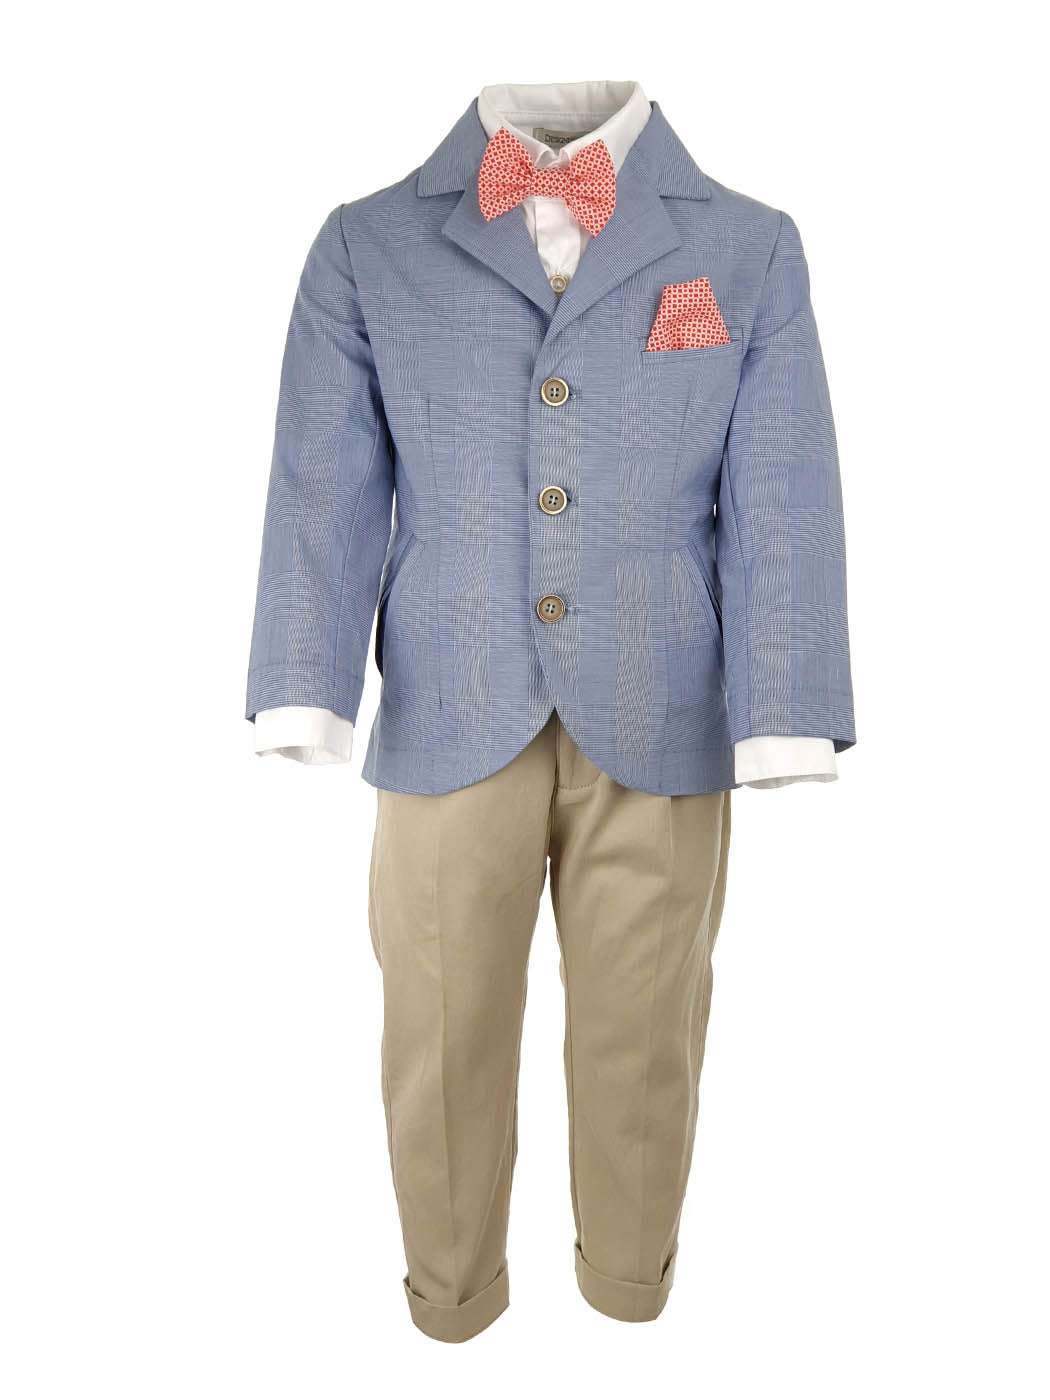 Baptism Cotton Suit set 7pcs for boy - REIMON